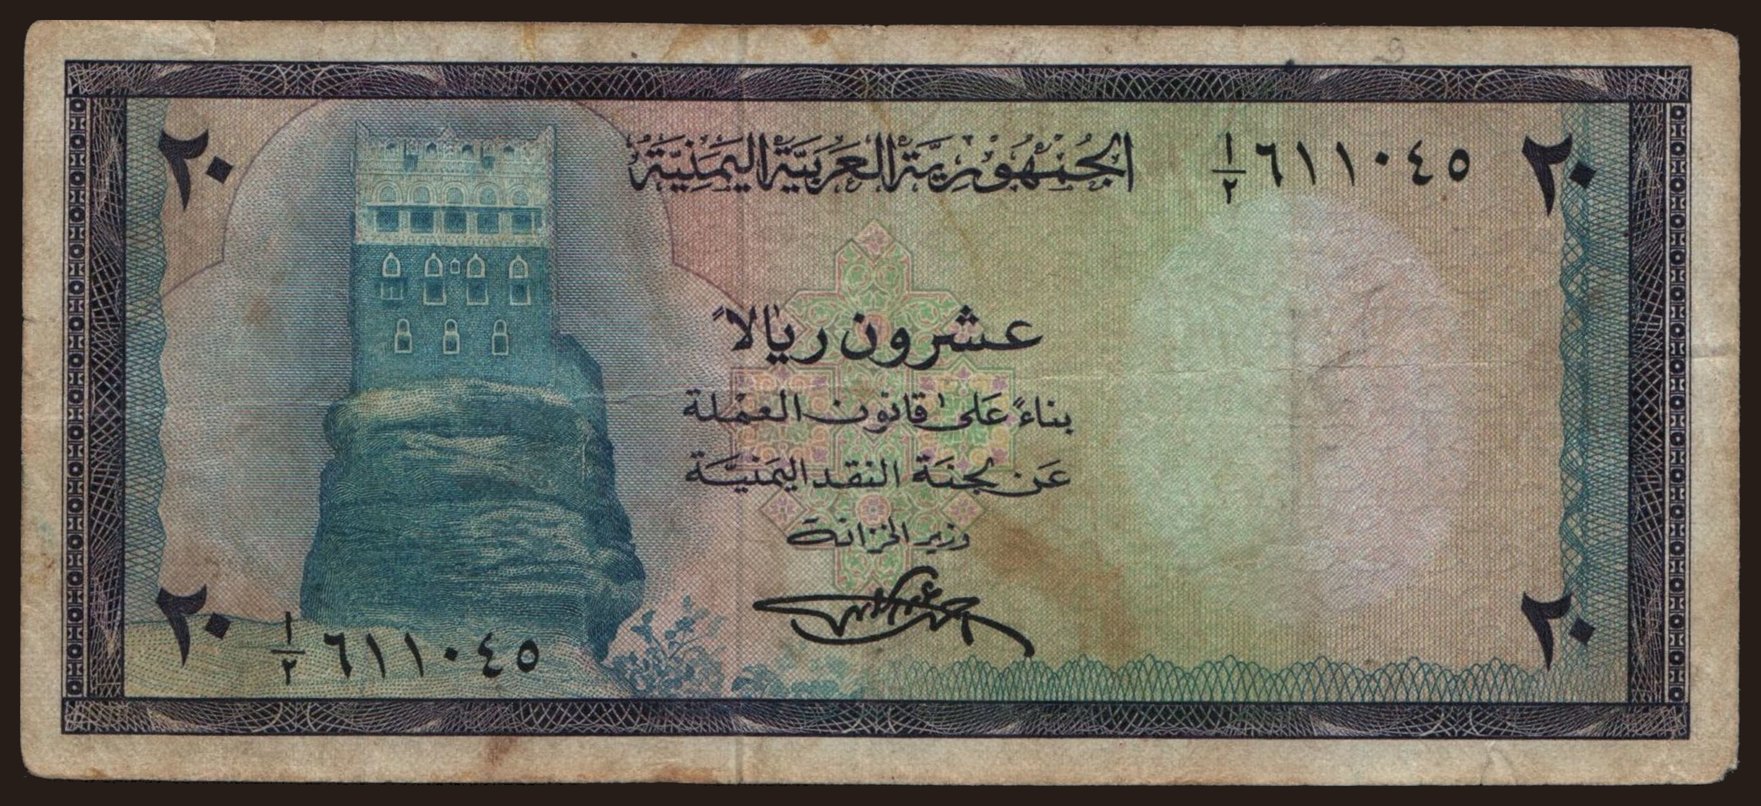 20 rials, 1971